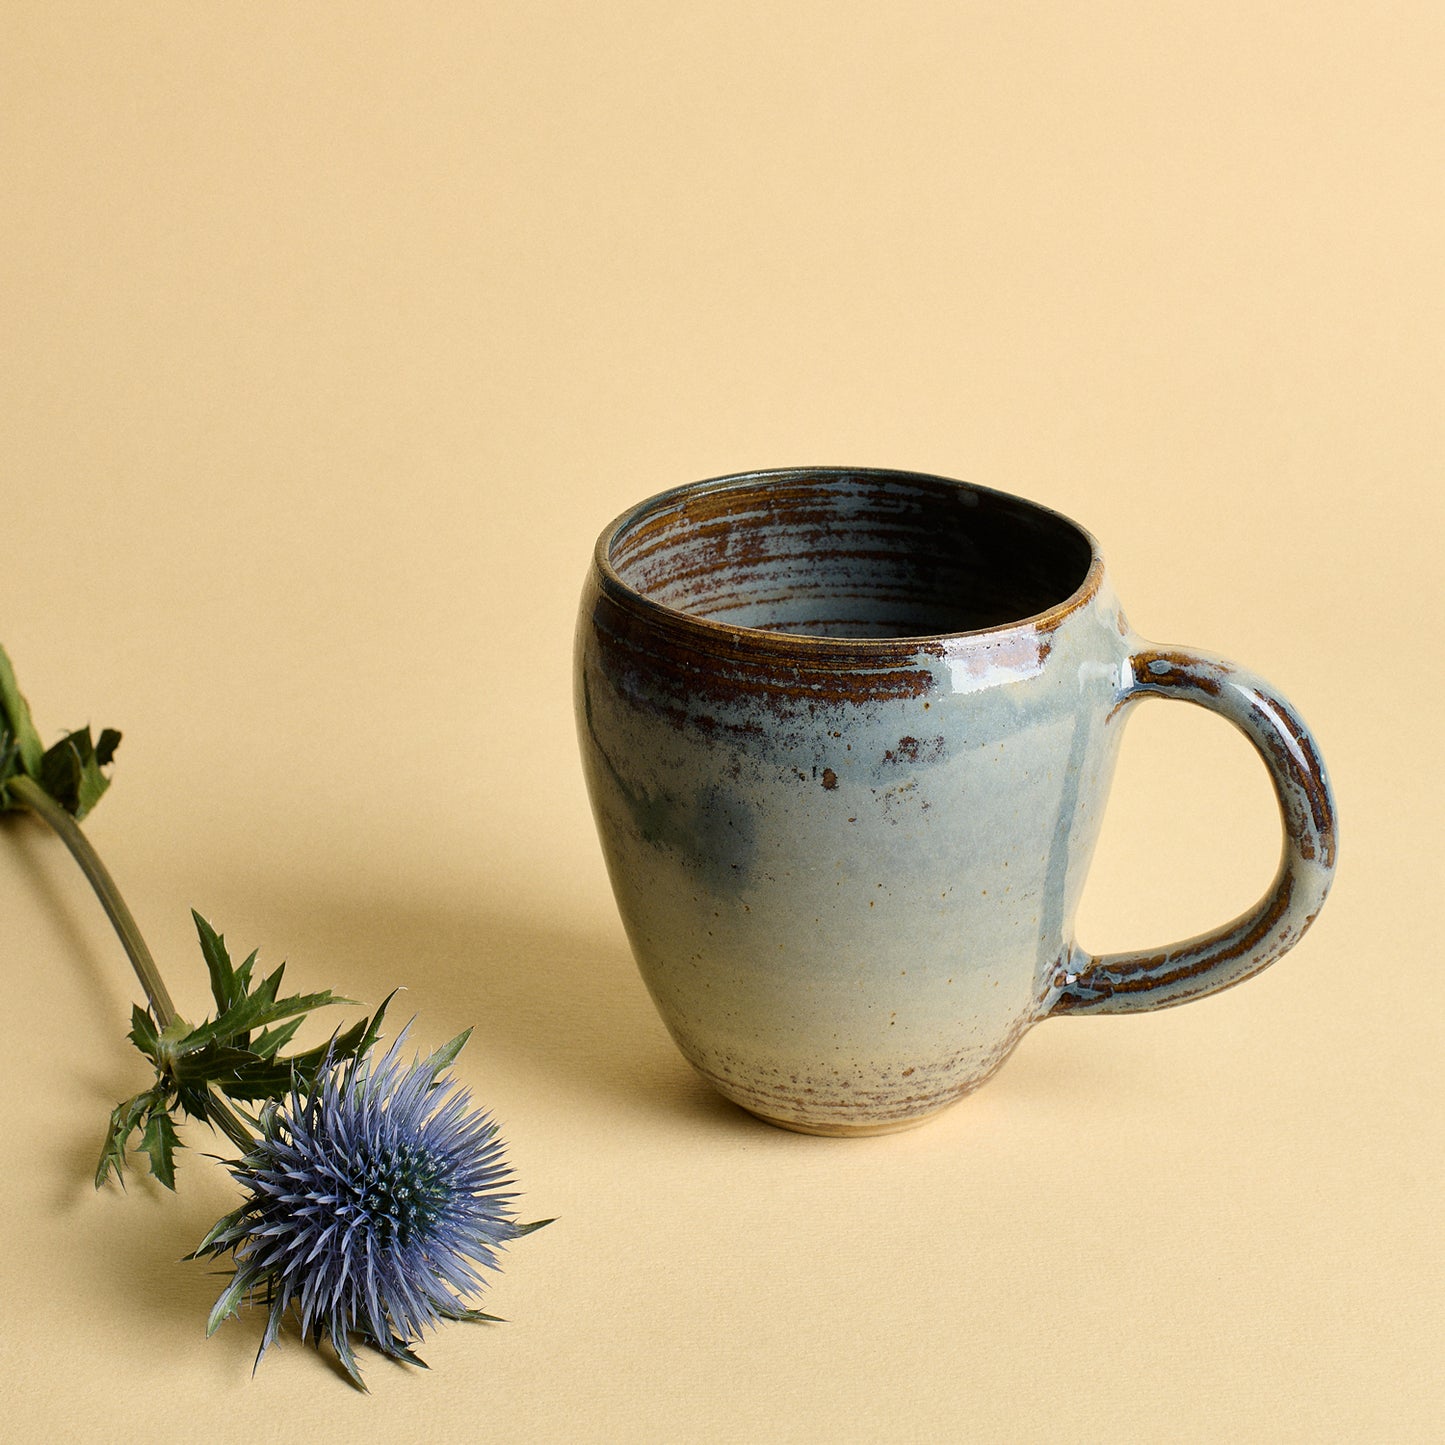 Large blue mug